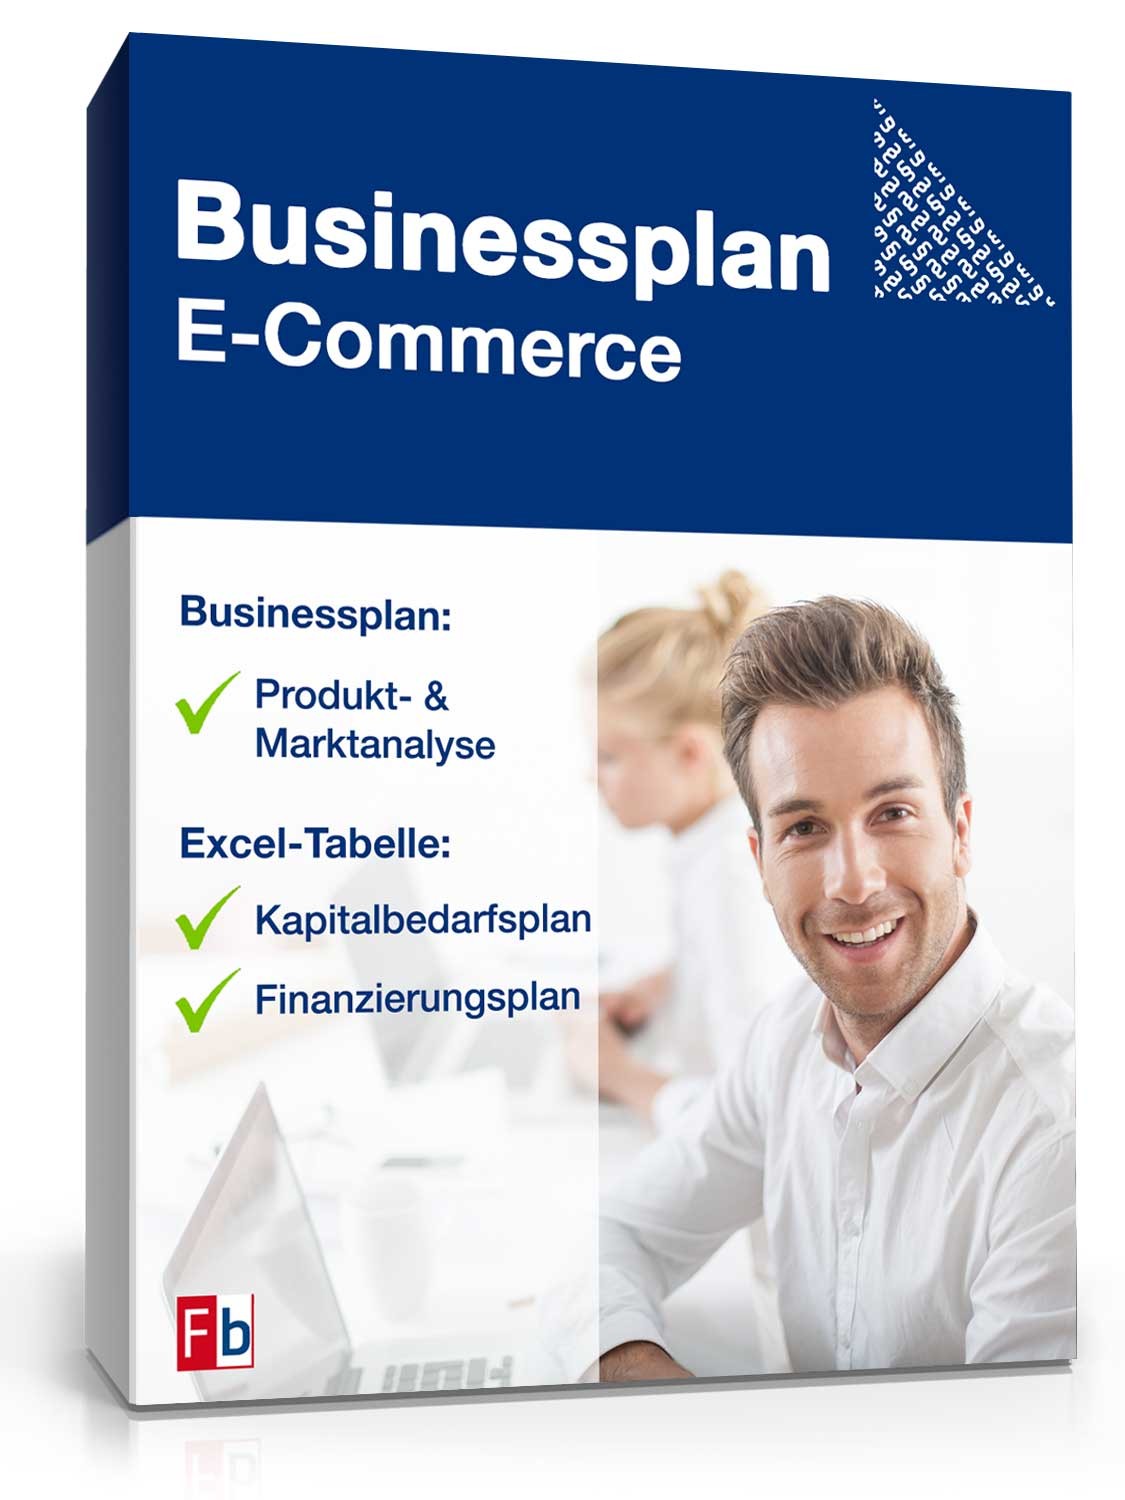 Hauptbild des Produkts: Businessplan E-Commerce